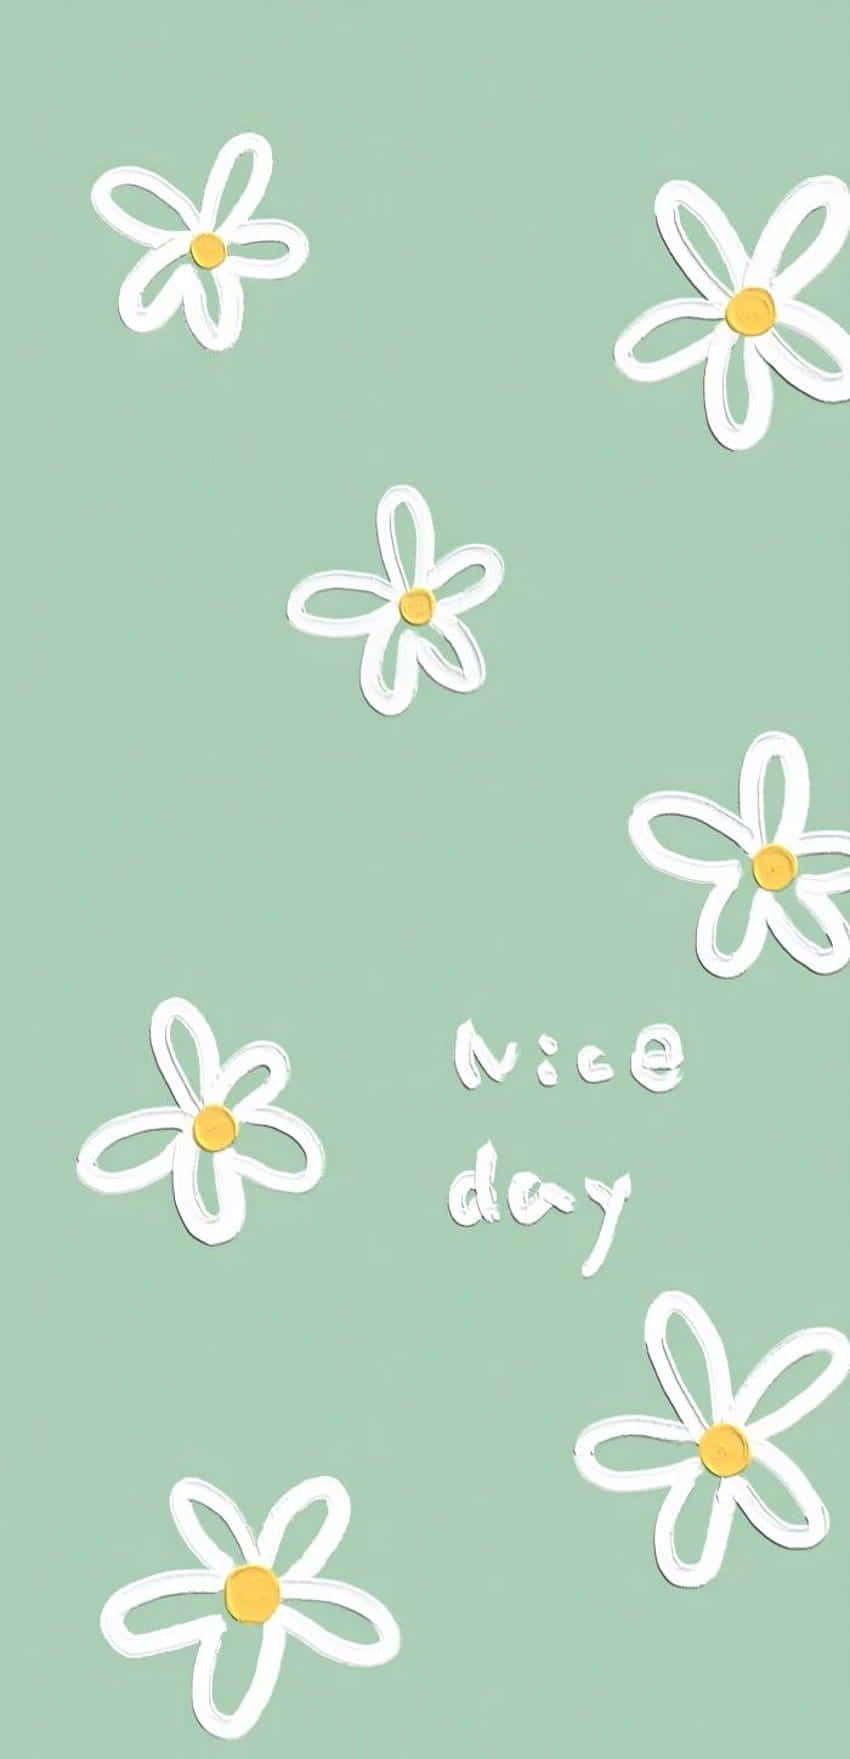 Niedlichesalbeigrüne Weiße Gänseblümchen, Schöner Tag Wallpaper